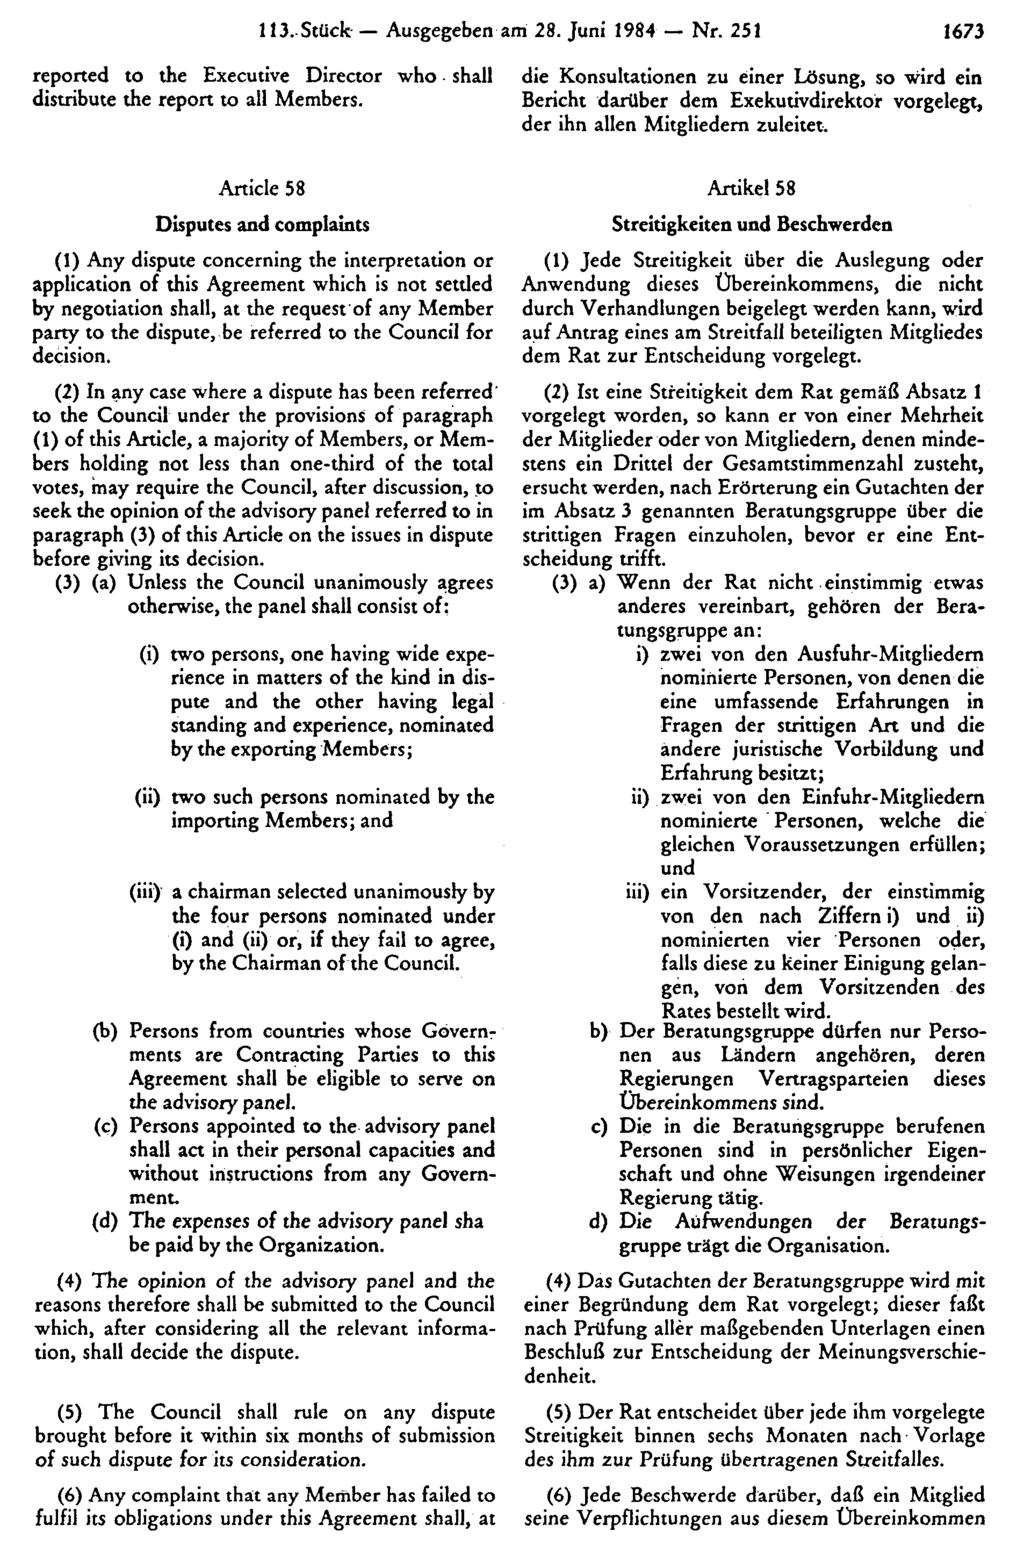 113. Stück Ausgegeben am 28. Juni 1984 Nr. 251 1673 die Konsultationen zu einer Lösung, so wird ein Bericht darüber dem Exekutivdirektor vorgelegt, der ihn allen Mitgliedern zuleitet.